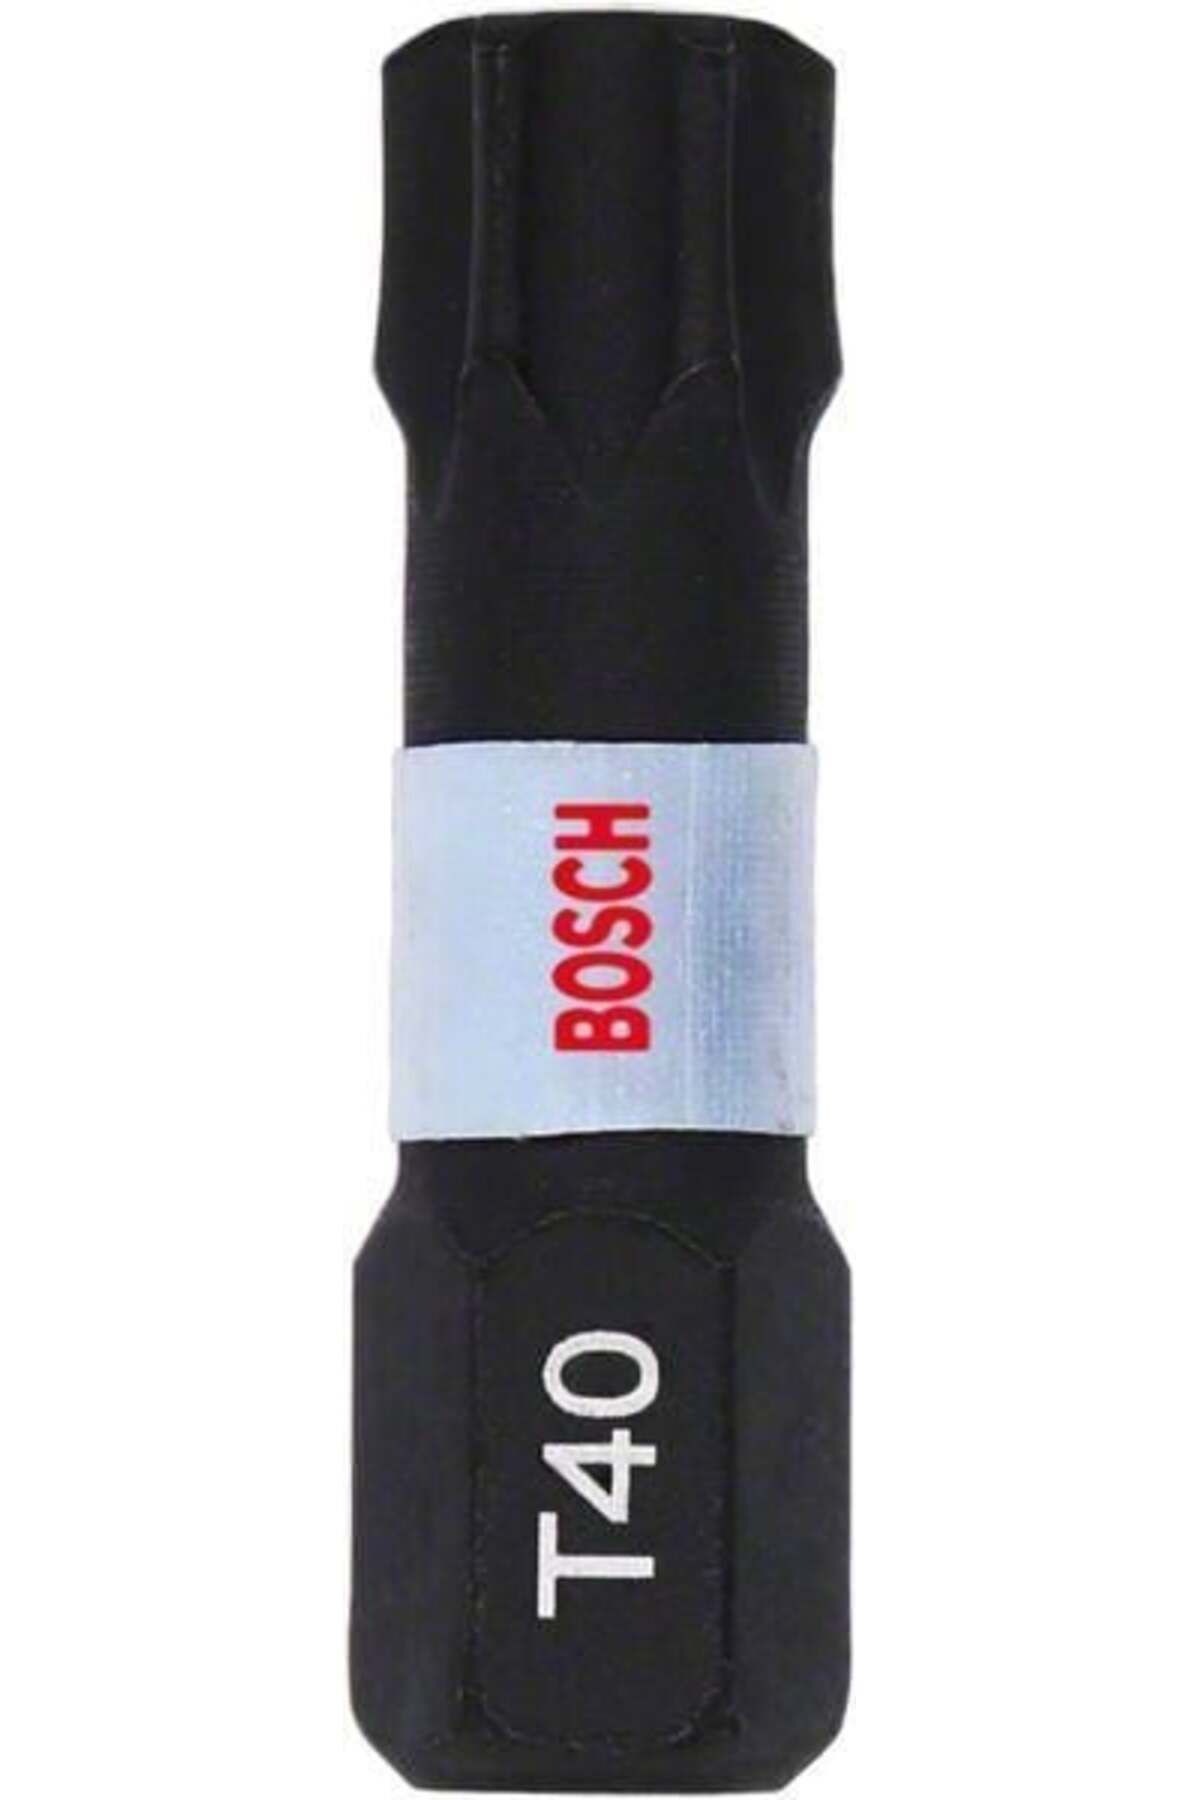 Bosch - Impact Control Serisi Vidalama Ucu T40*25 Mm 2'li